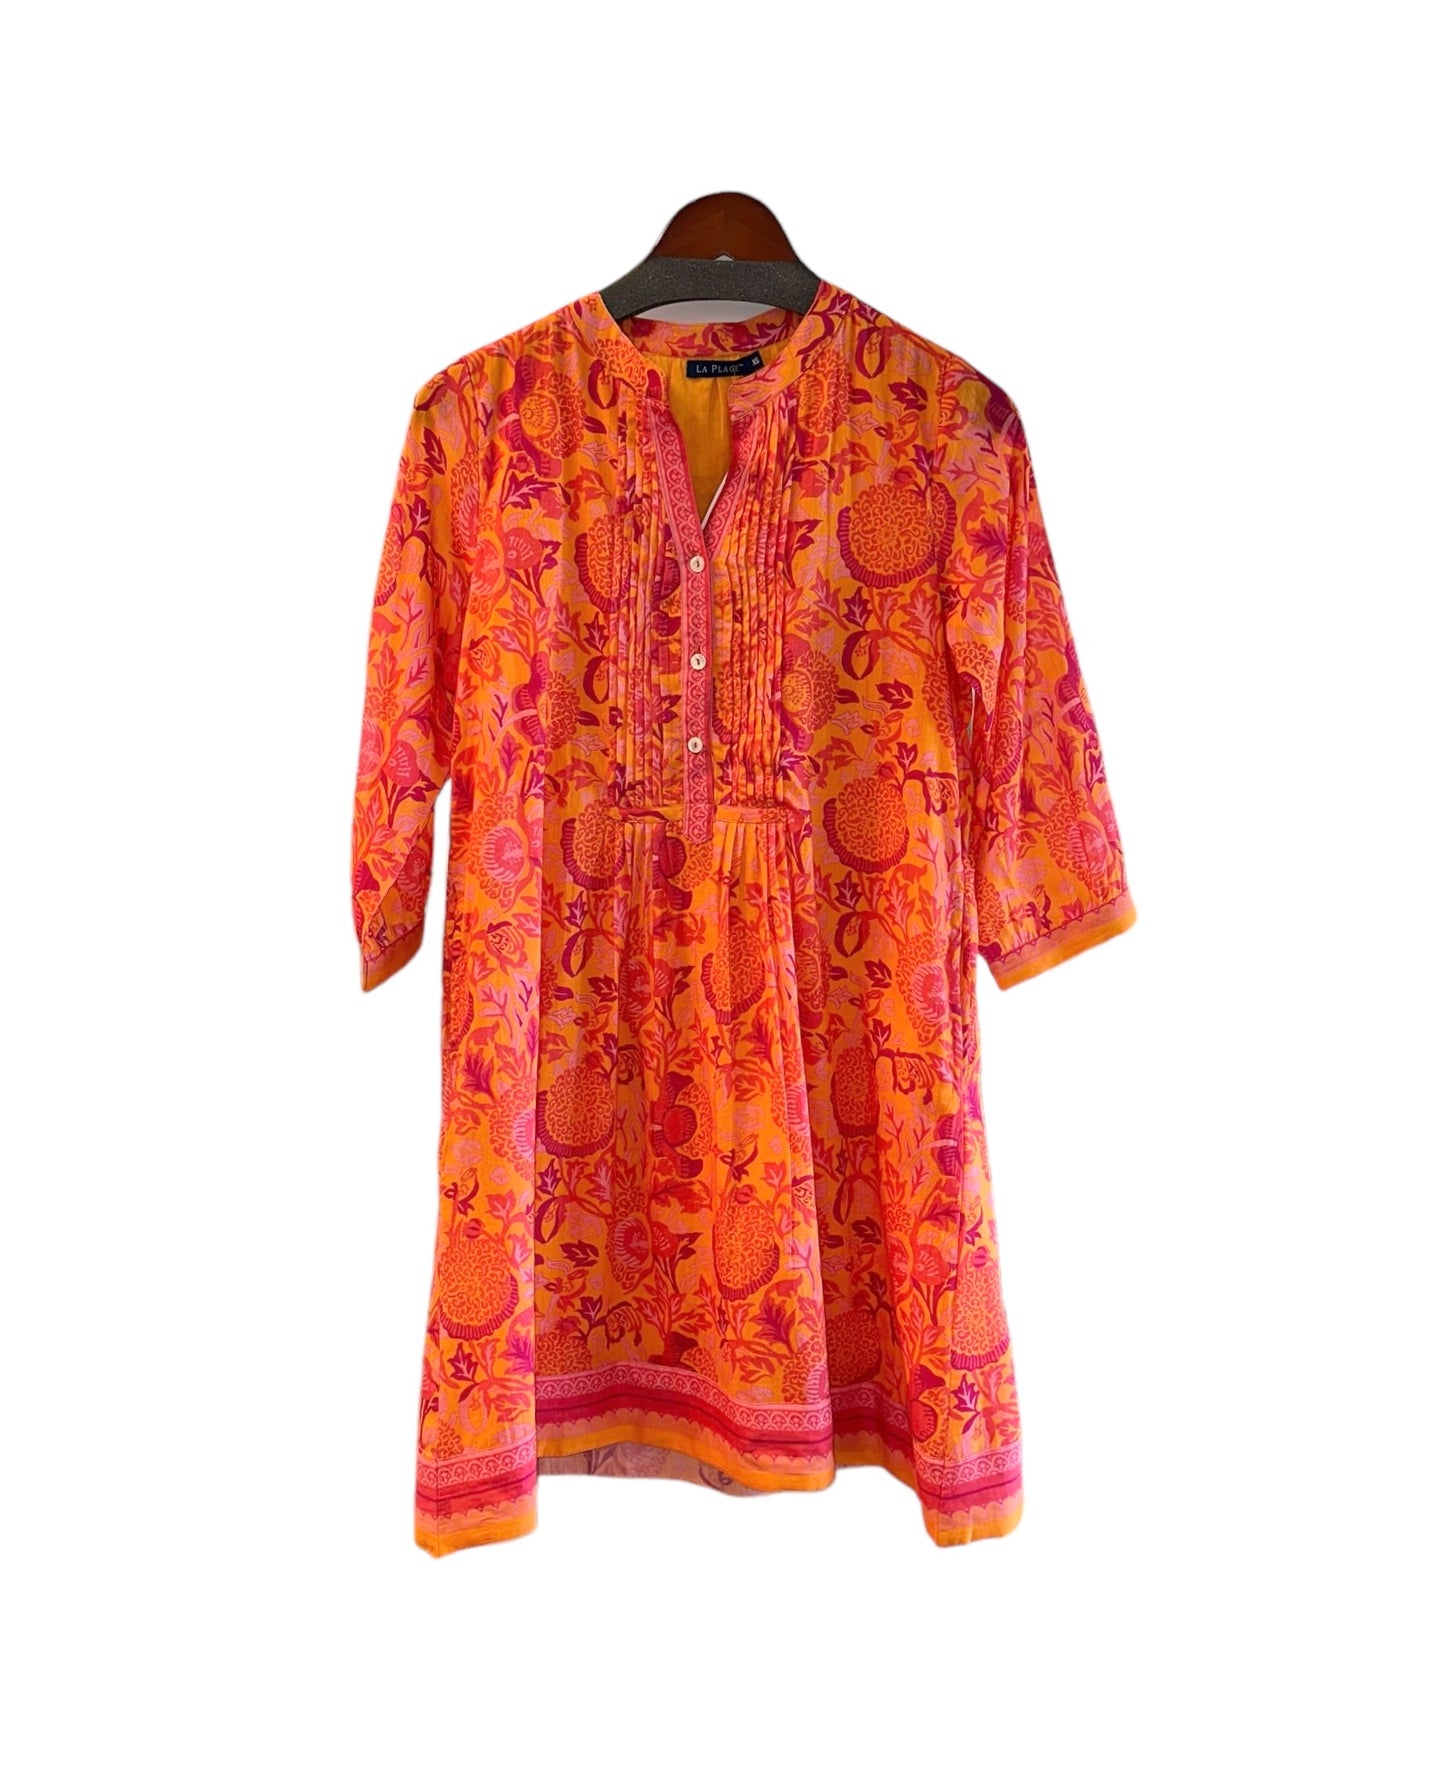 Maye Dress in floral orange/pinks by LA Plage